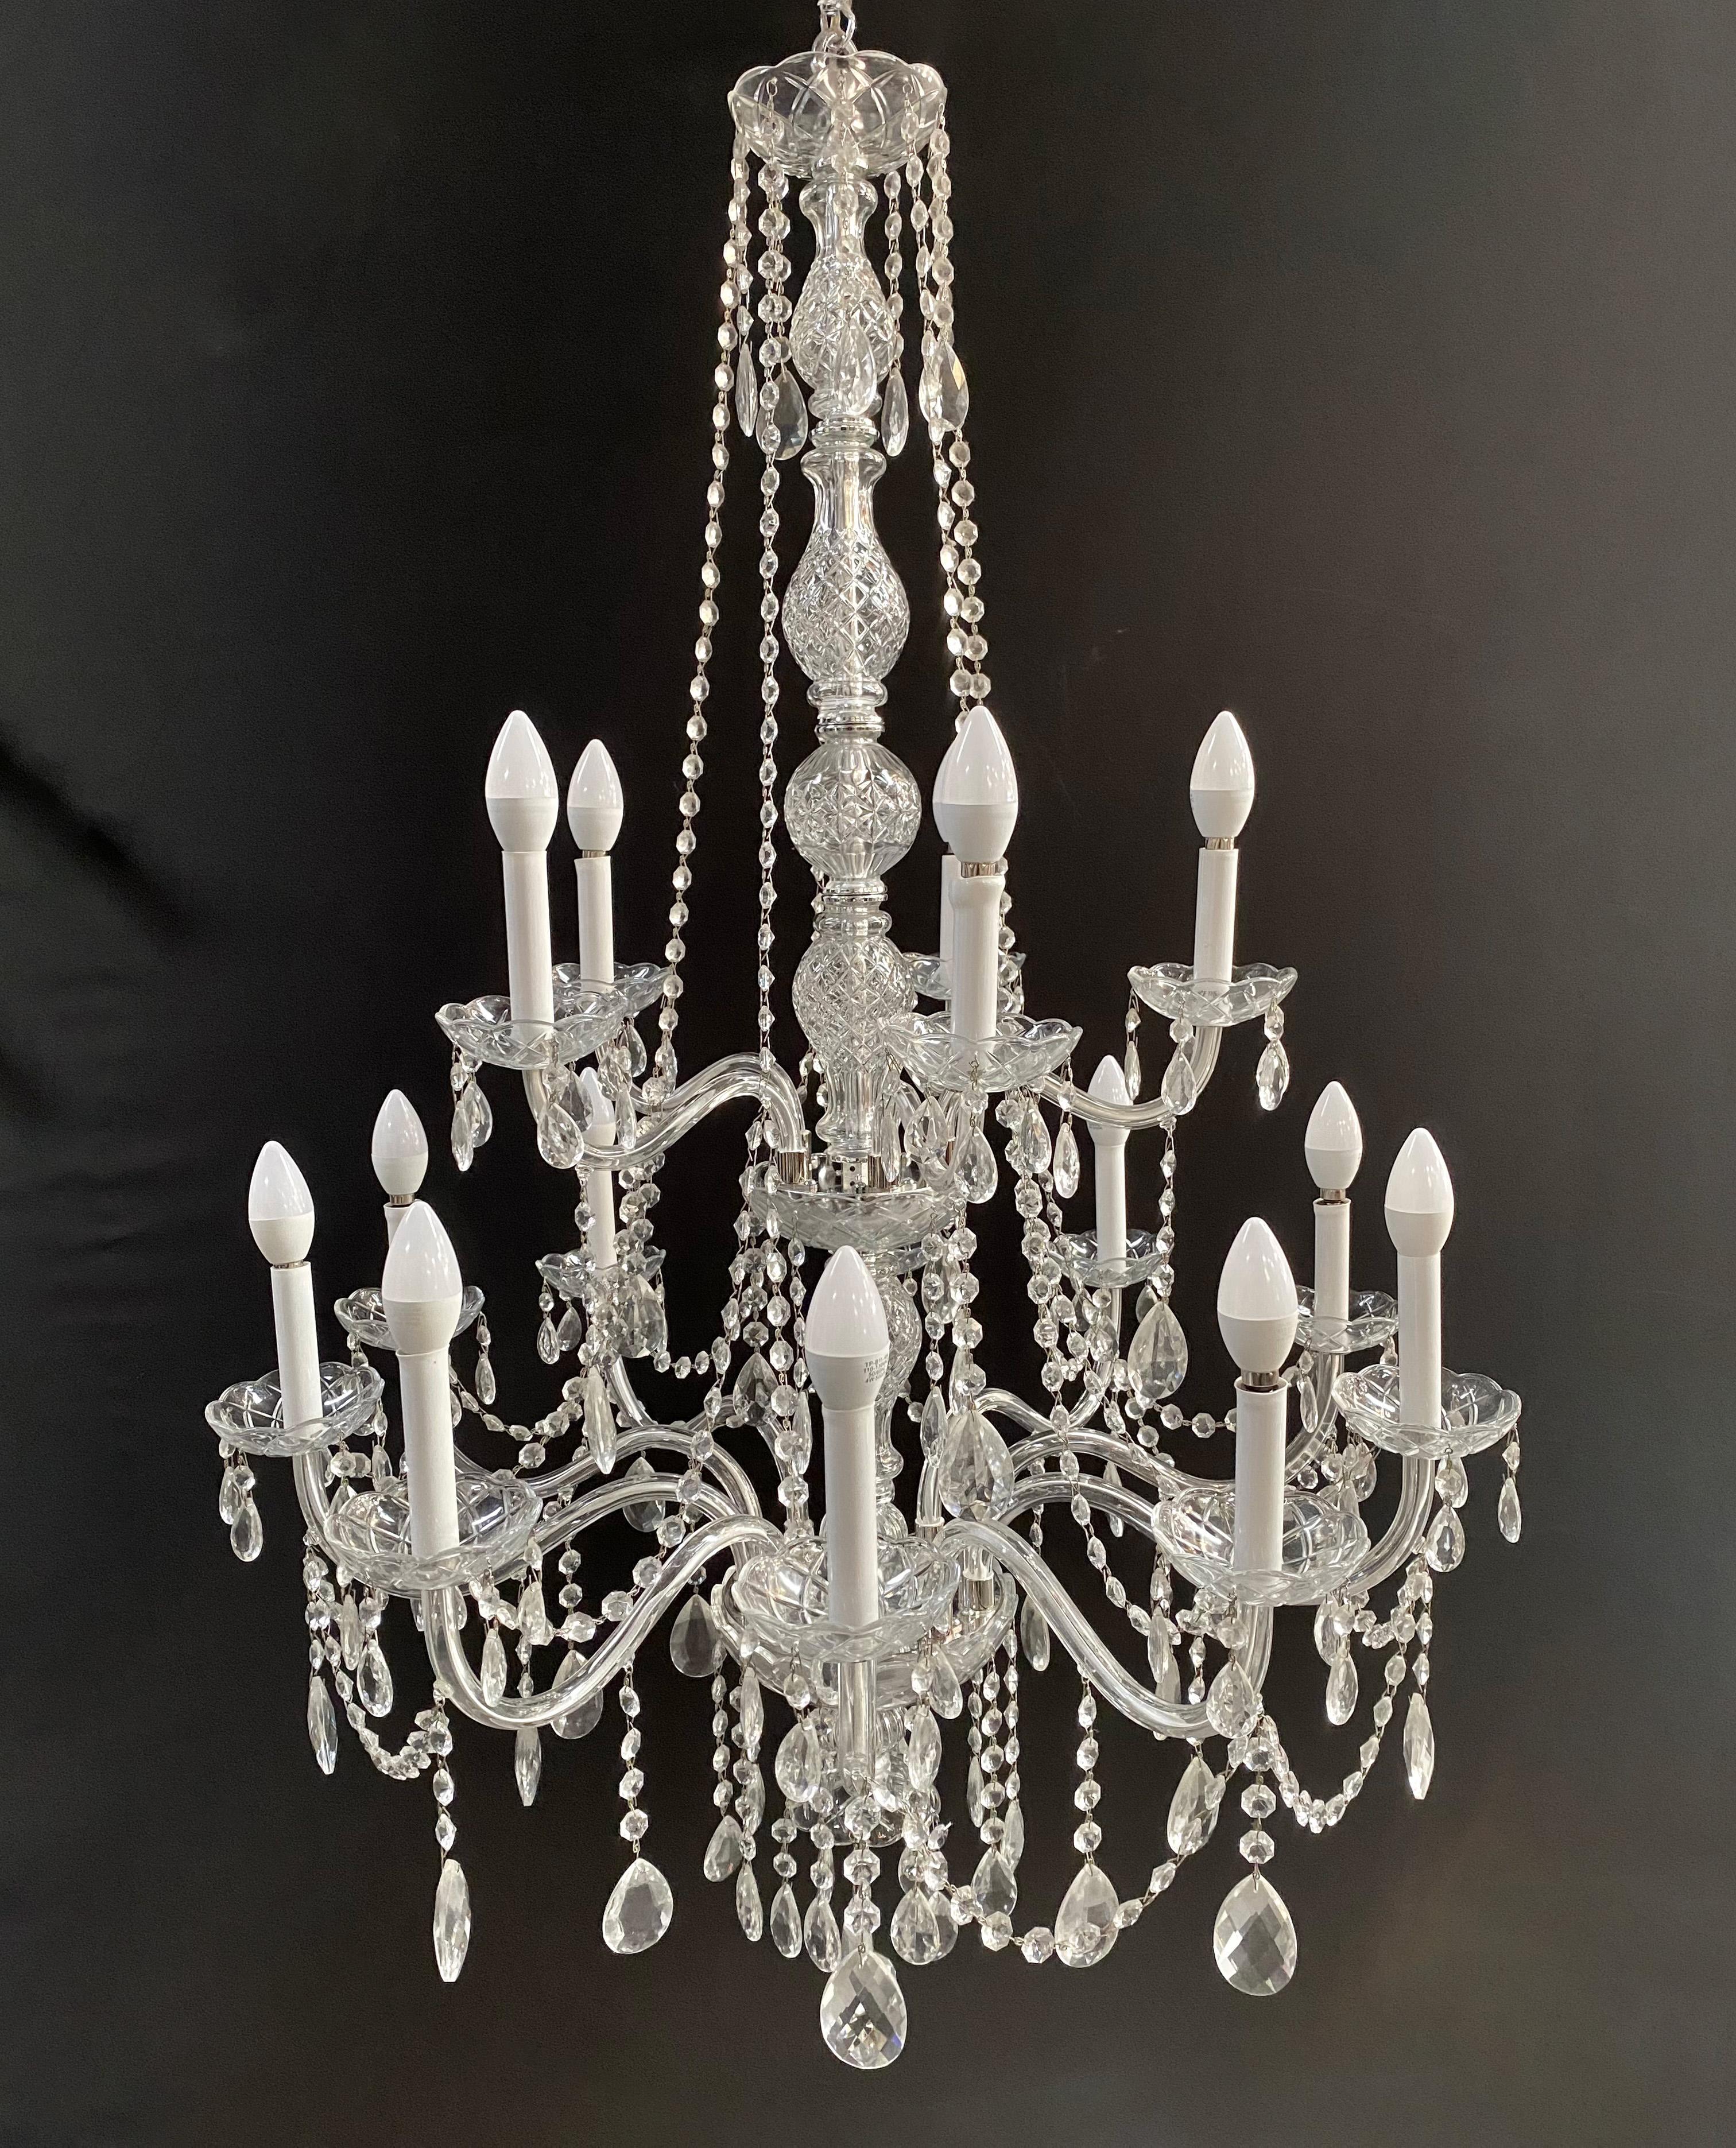 Eine  exquisiter Vintage-Kronleuchter im Hollywood-Regency-Stil aus französischem Kristall. Dieses mit viel Liebe zum Detail gefertigte, opulente Meisterwerk strahlt eine Aura von Luxus und Raffinesse aus.

Mit seinen zarten Glasarmen, die jeweils